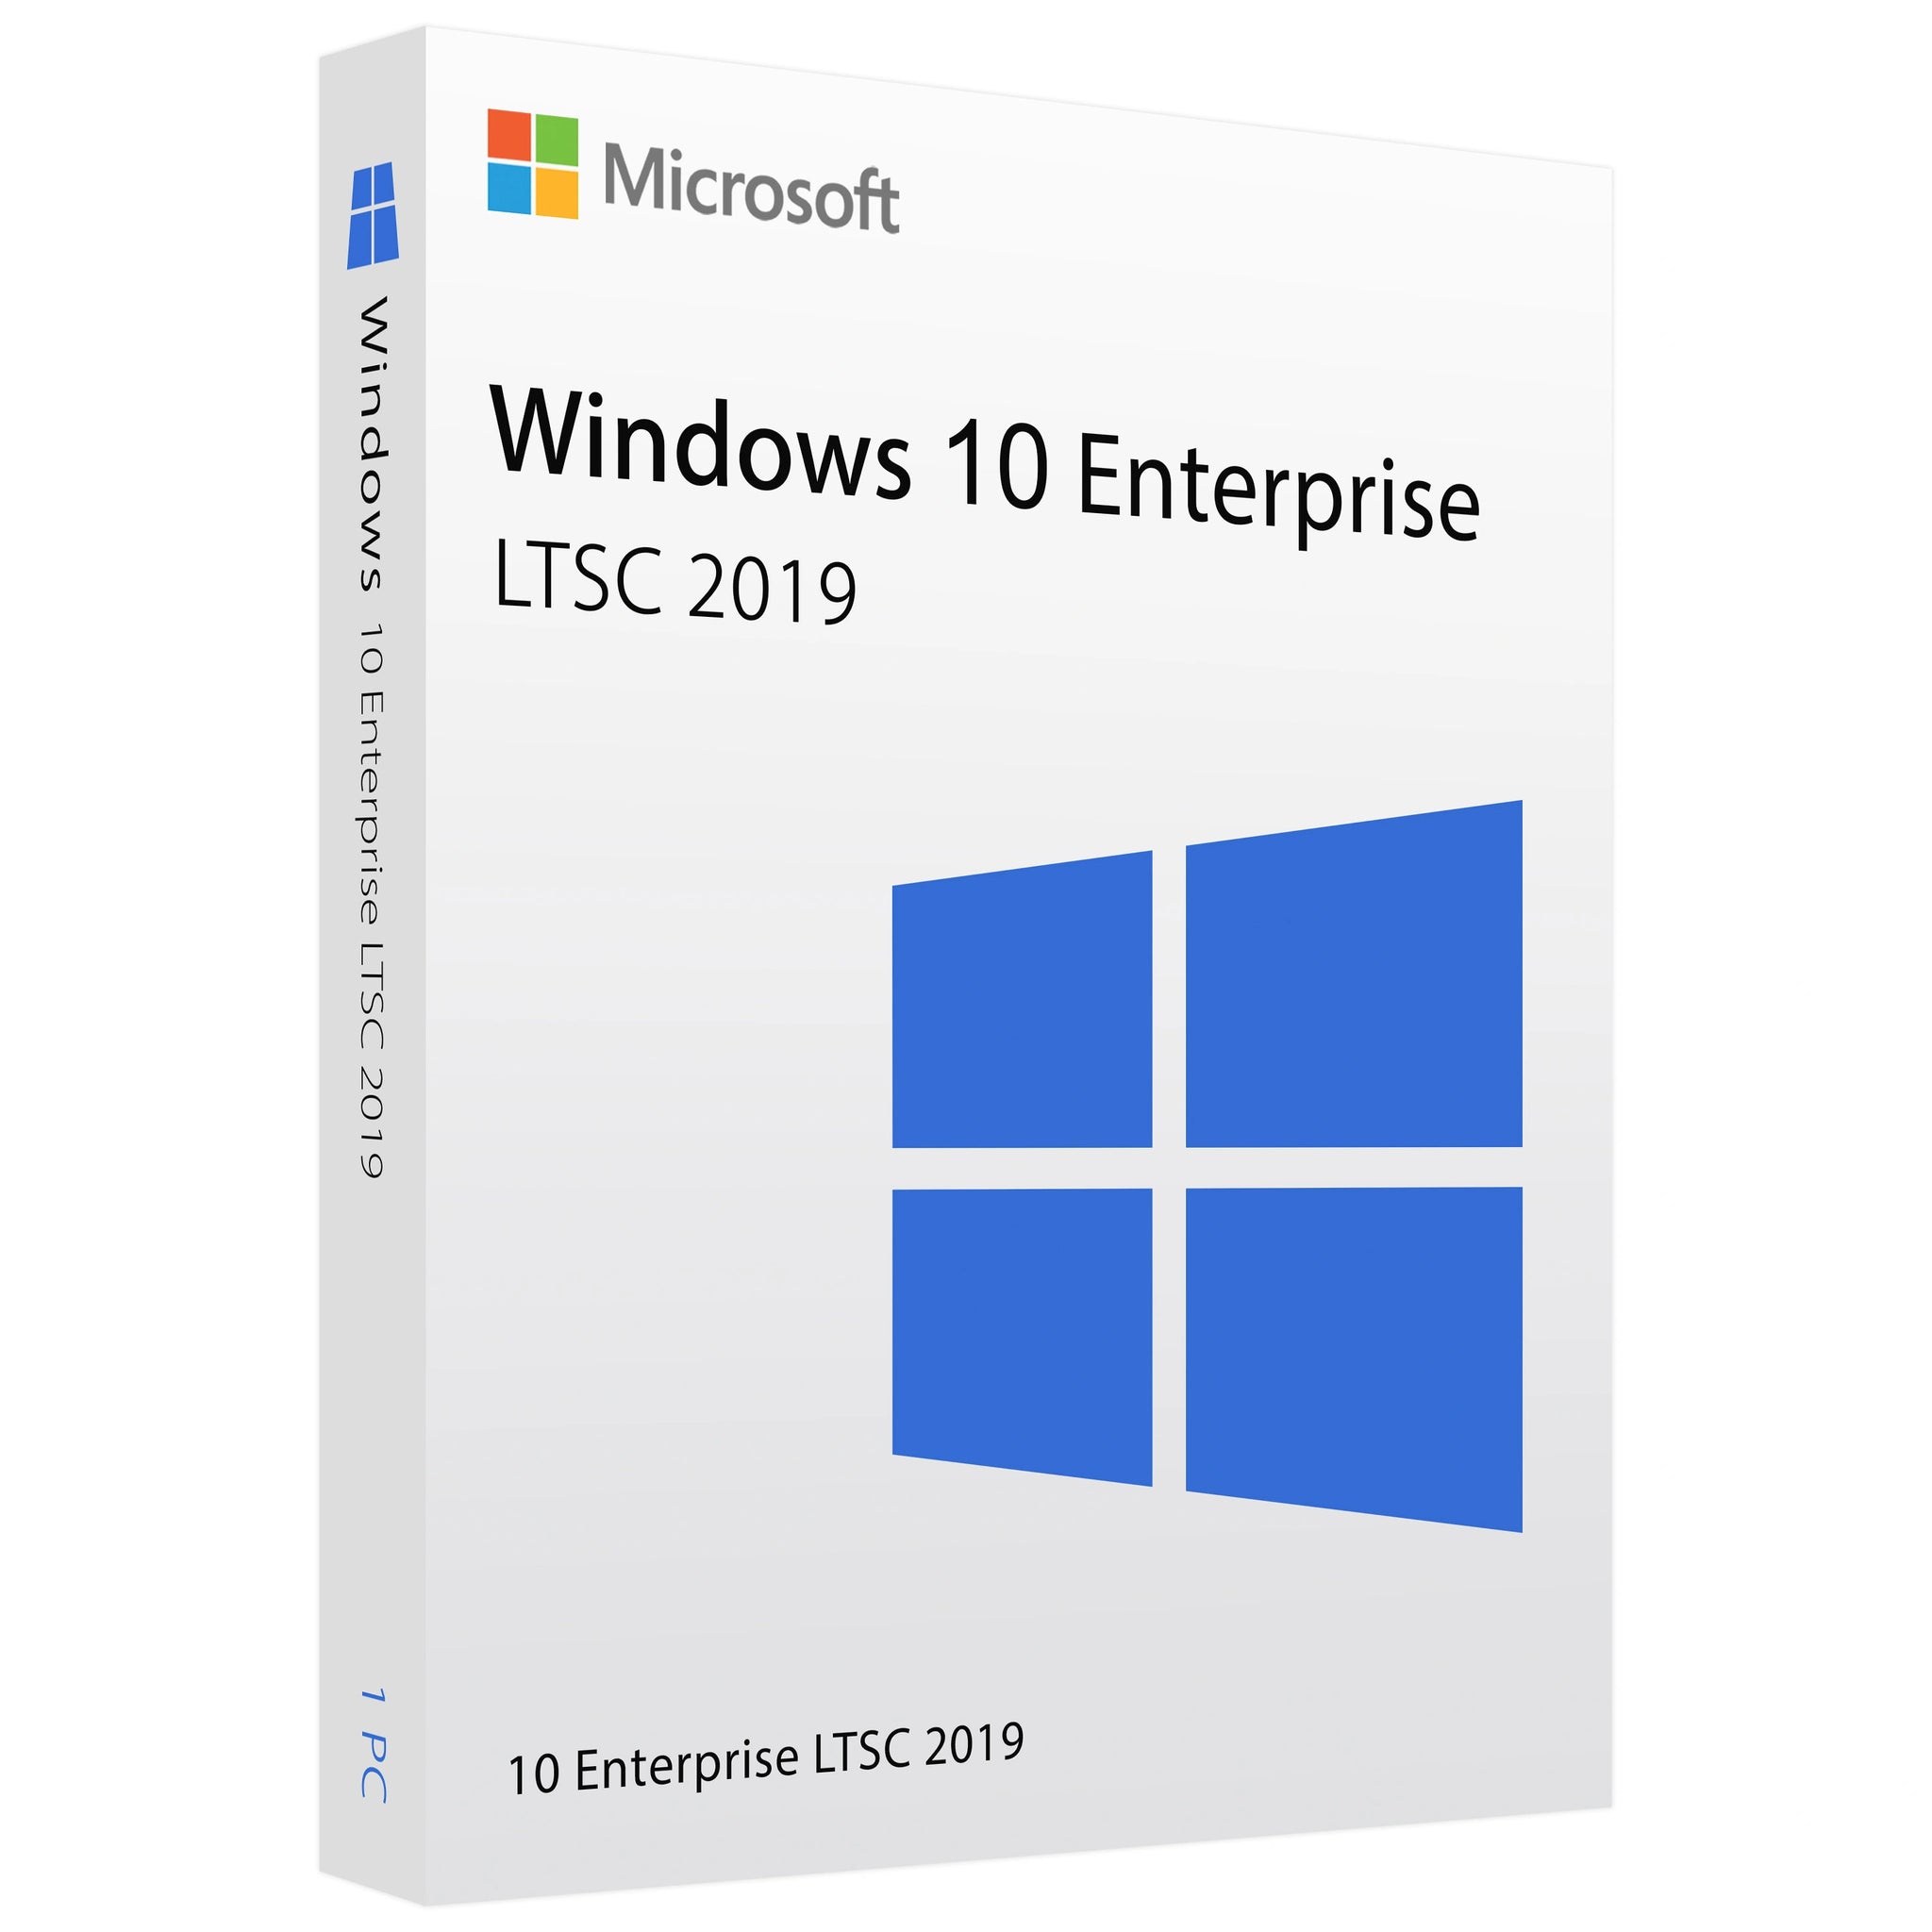 Microsoft Windows 10 Enterprise LTSC 2019 - Lifetime License Key for 1 PC